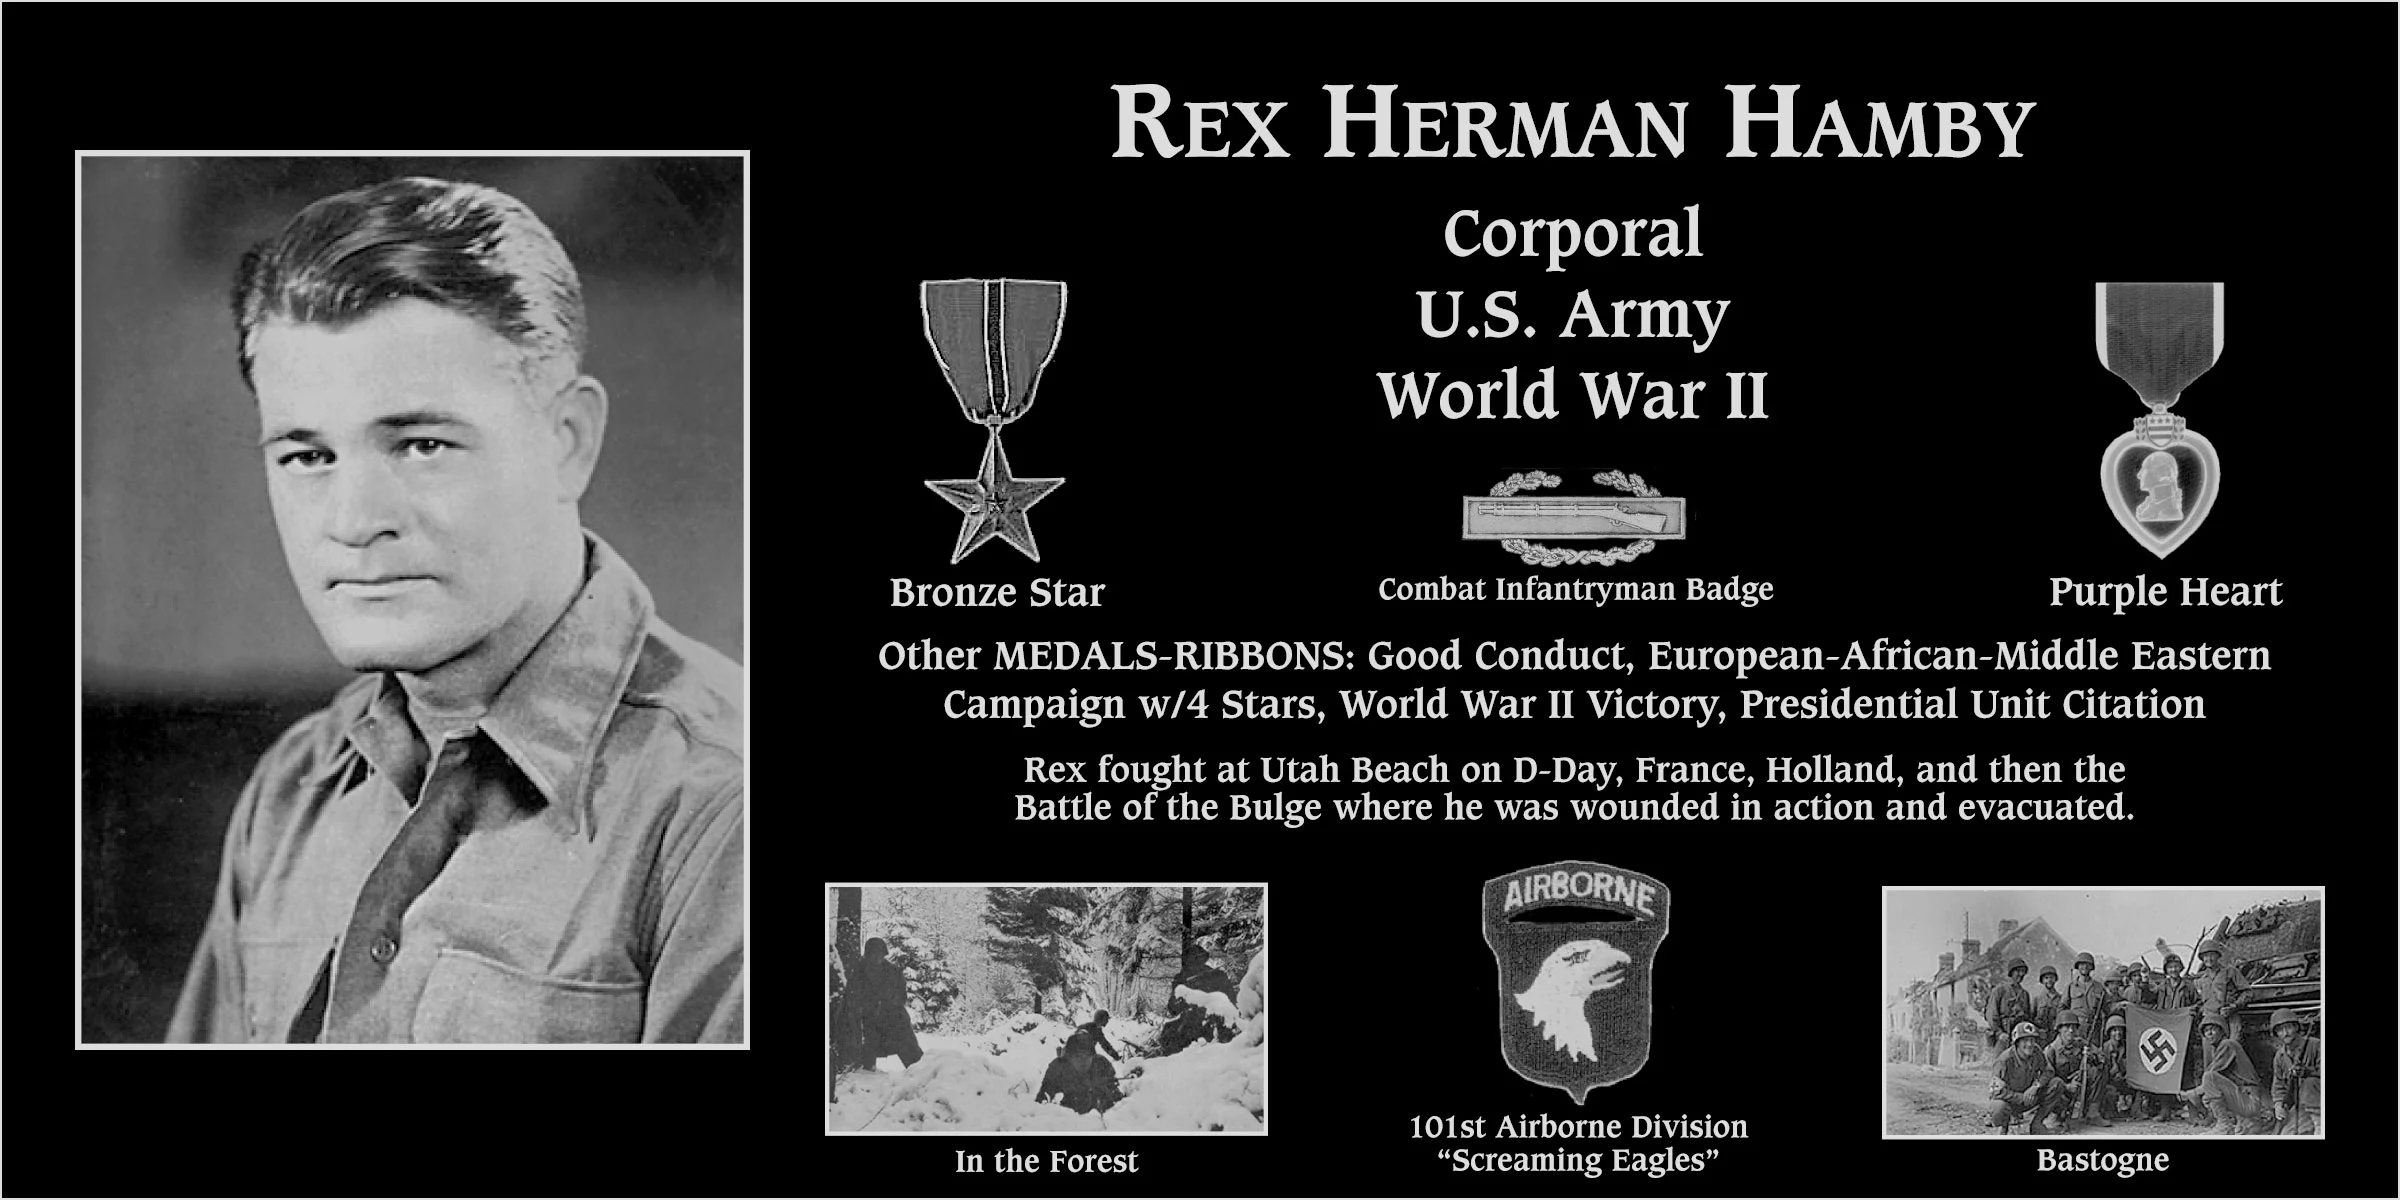 Rex Herman Hamby